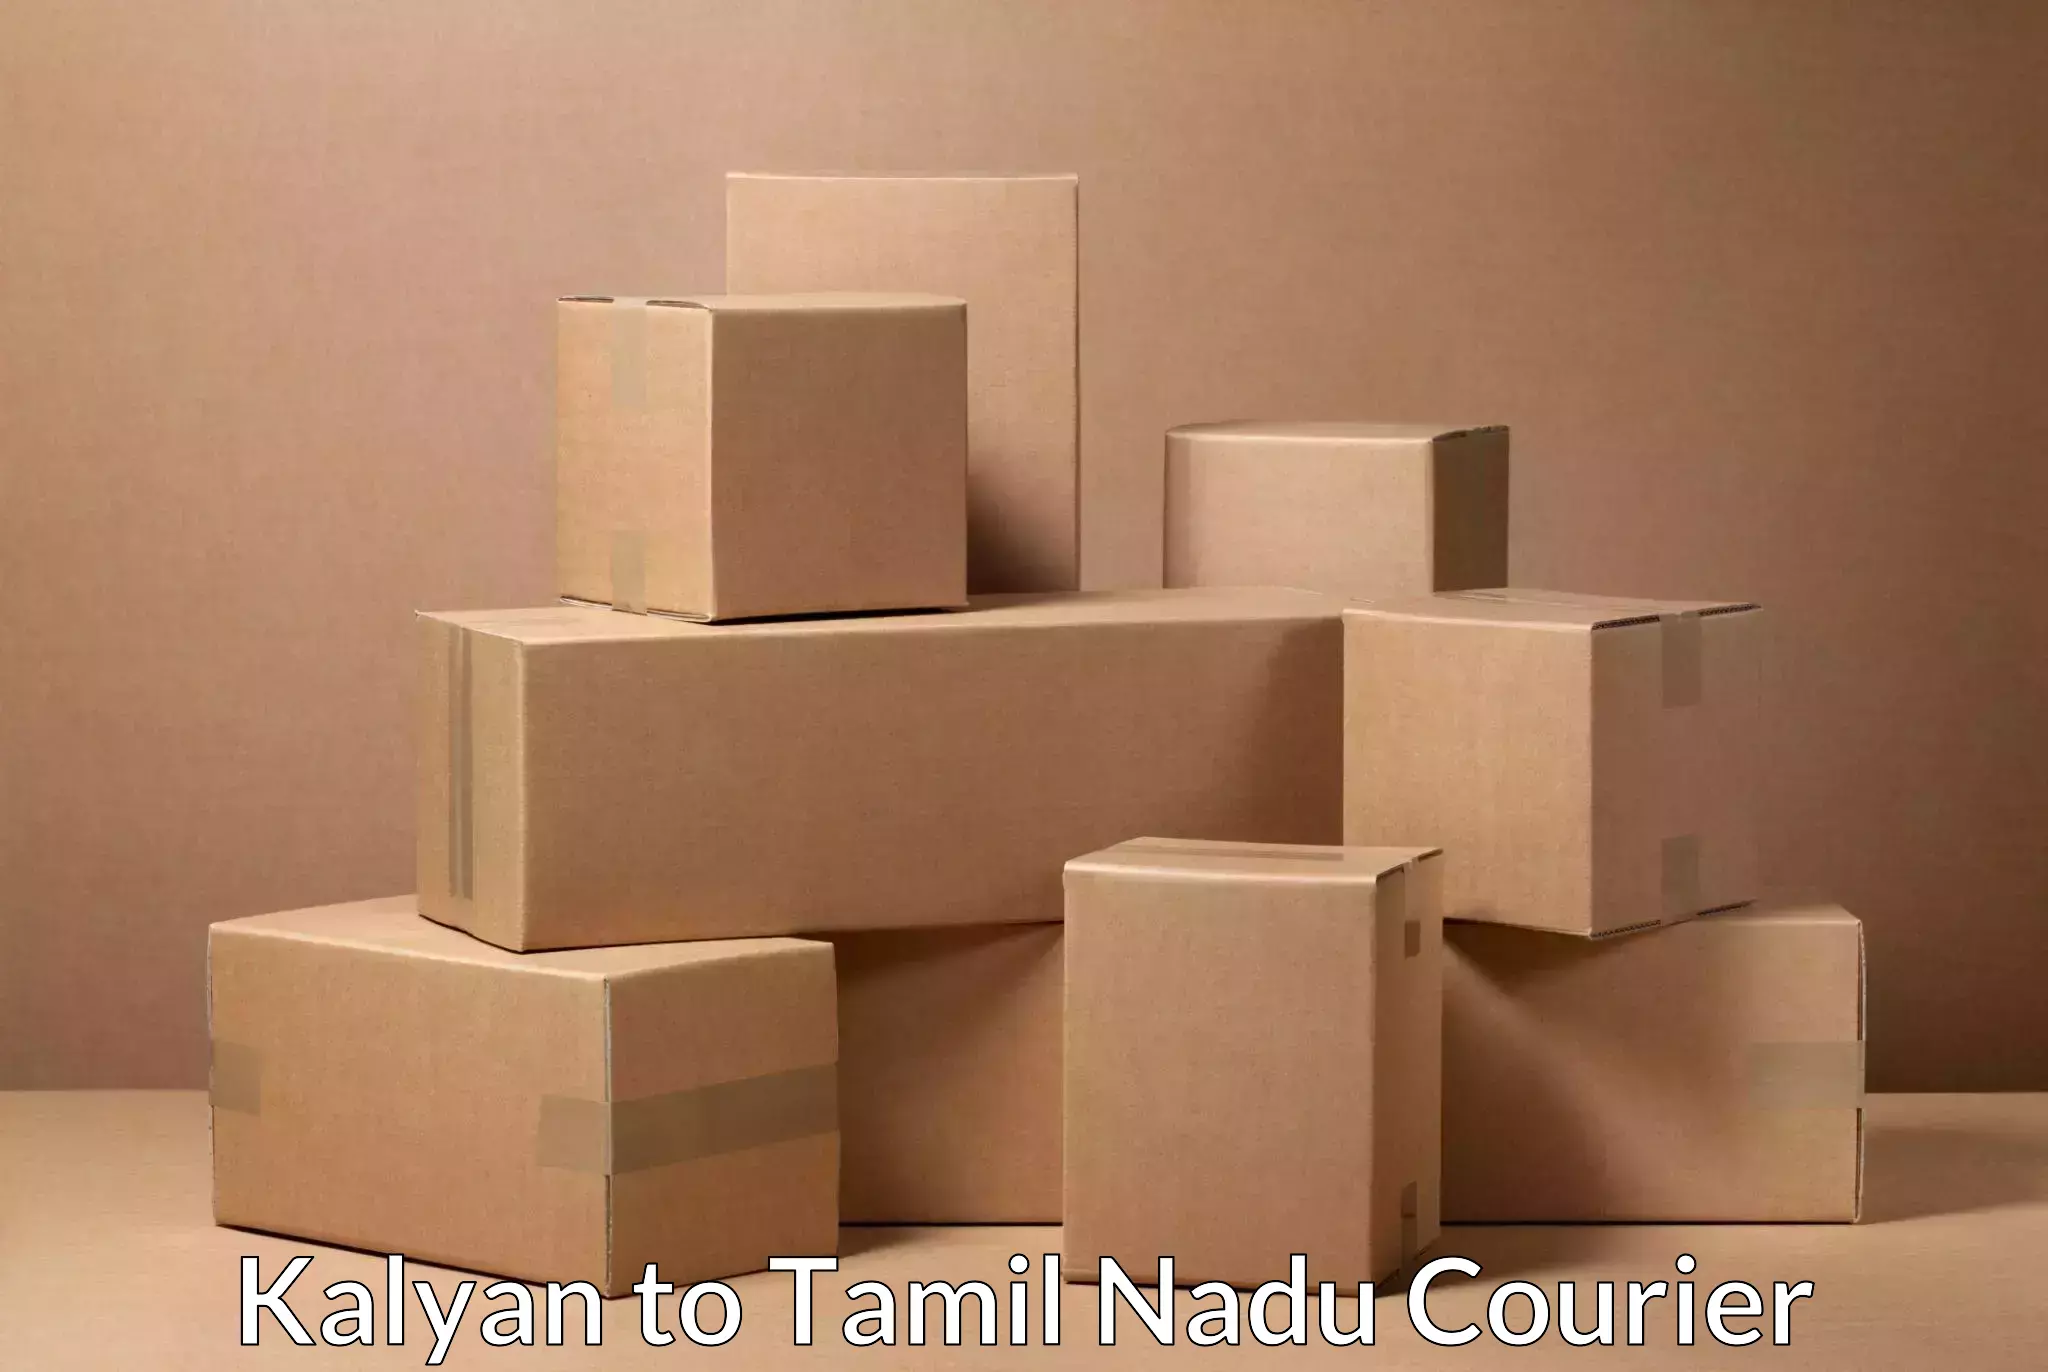 Tech-enabled shipping in Kalyan to Tamil Nadu